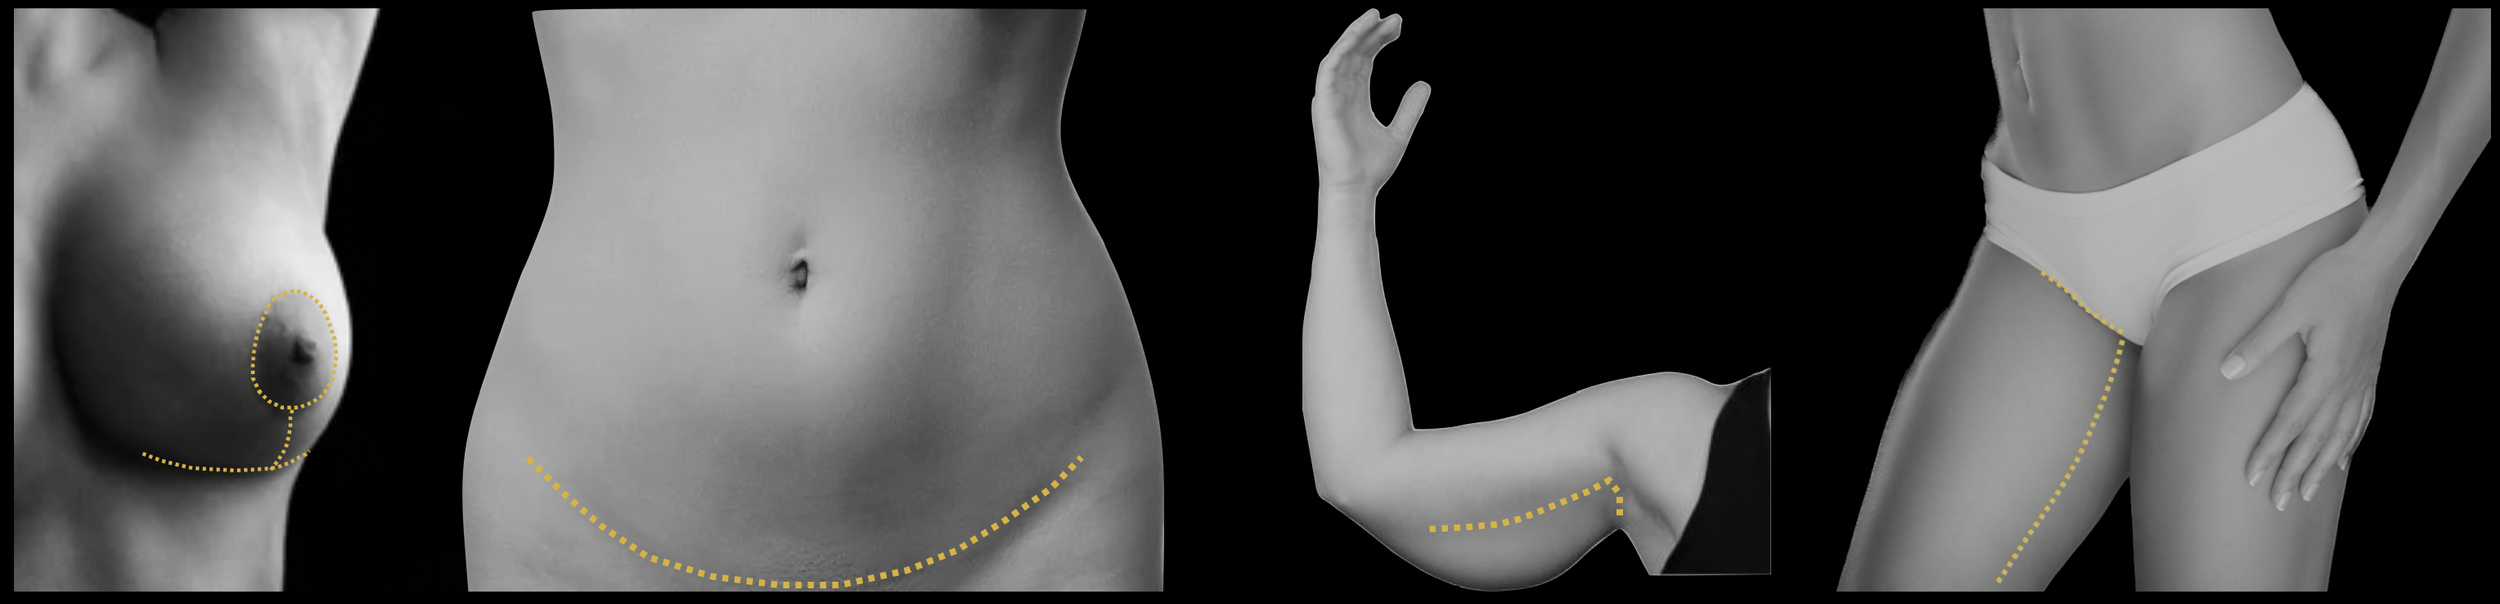 Post-bariatrische chirurgie of chirurgie na massaal gewichtsverlies kan een borstlift, buikwandcorrectie, armlift en dijlift omvatten.